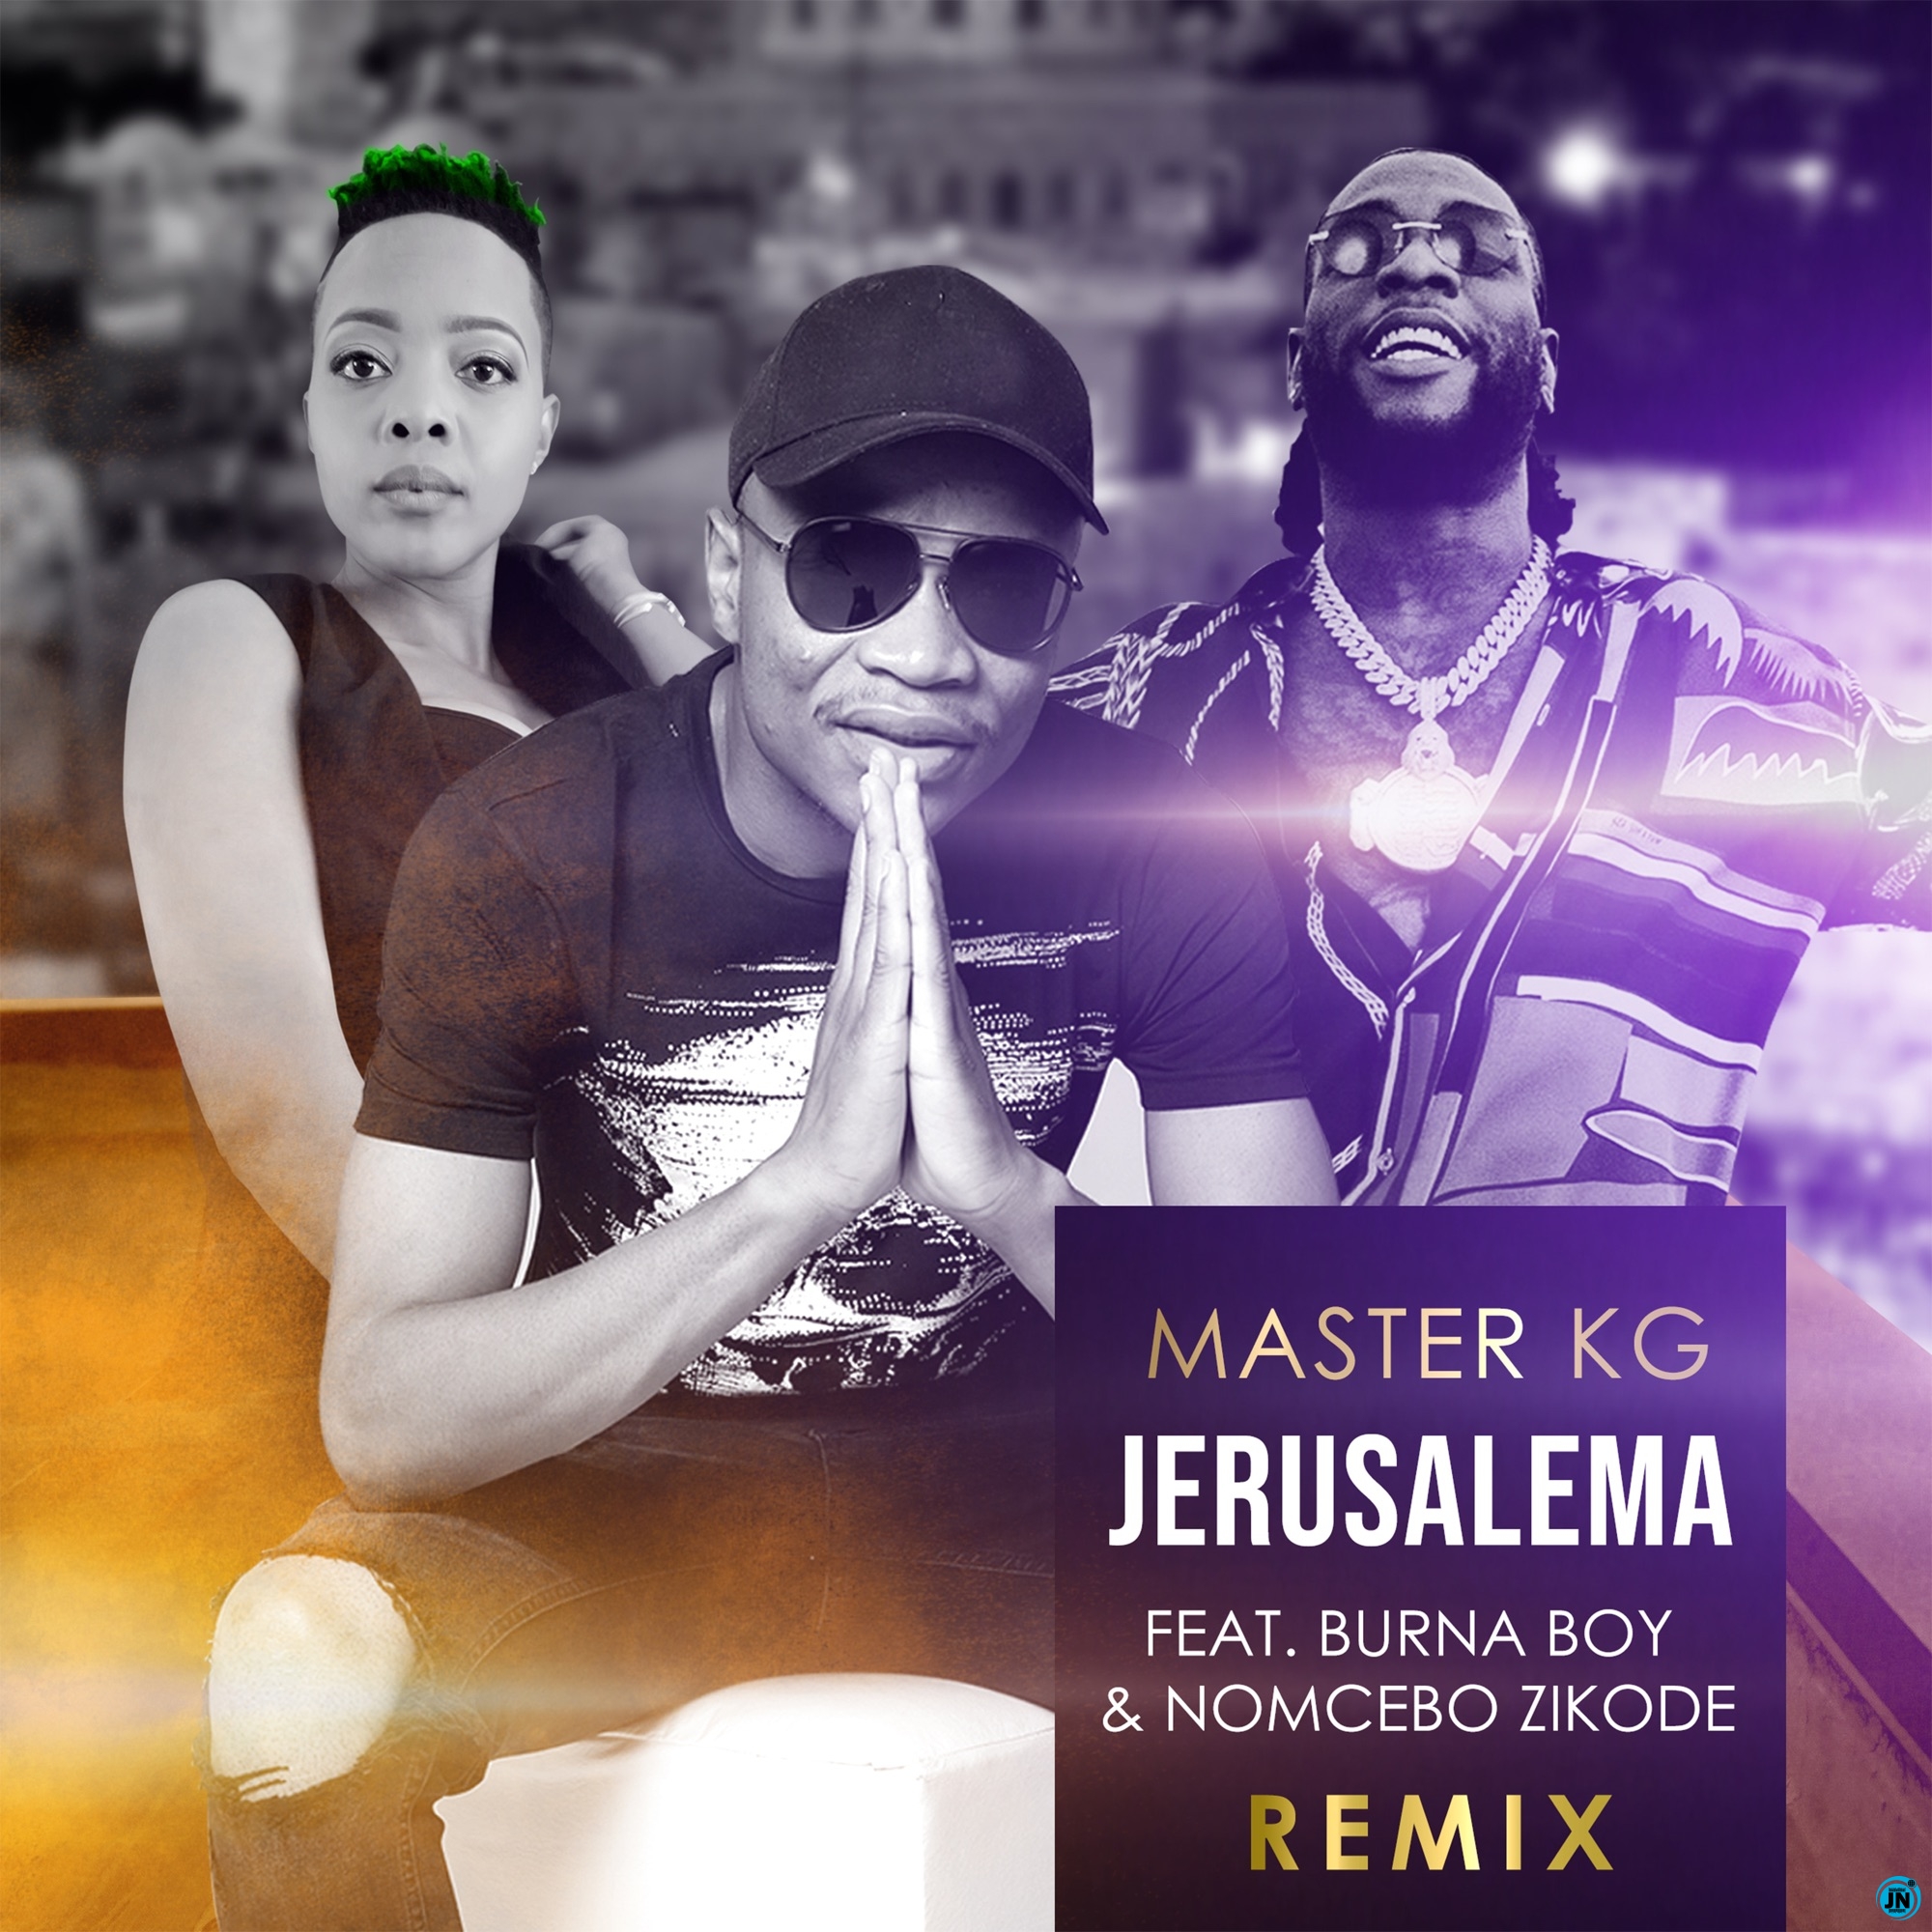 Master KG - Jerusalema (Remix) ft. Burna Boy & Nomcebo Zikode   Mp3 Download lyrics